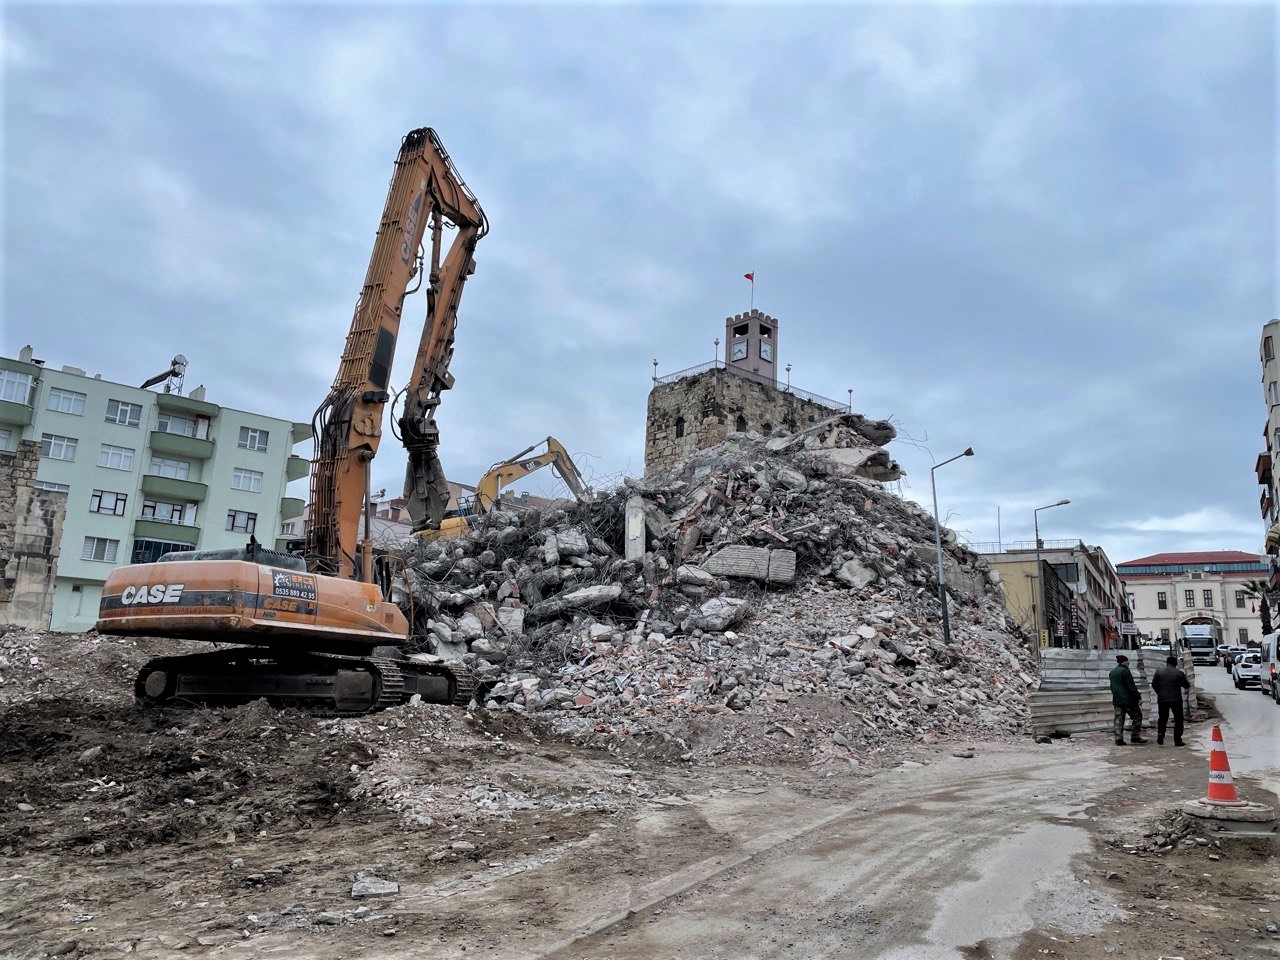 Sinop’un 2 bin 500 yıllık surlarının çehresi yıkımlarla değişiyor